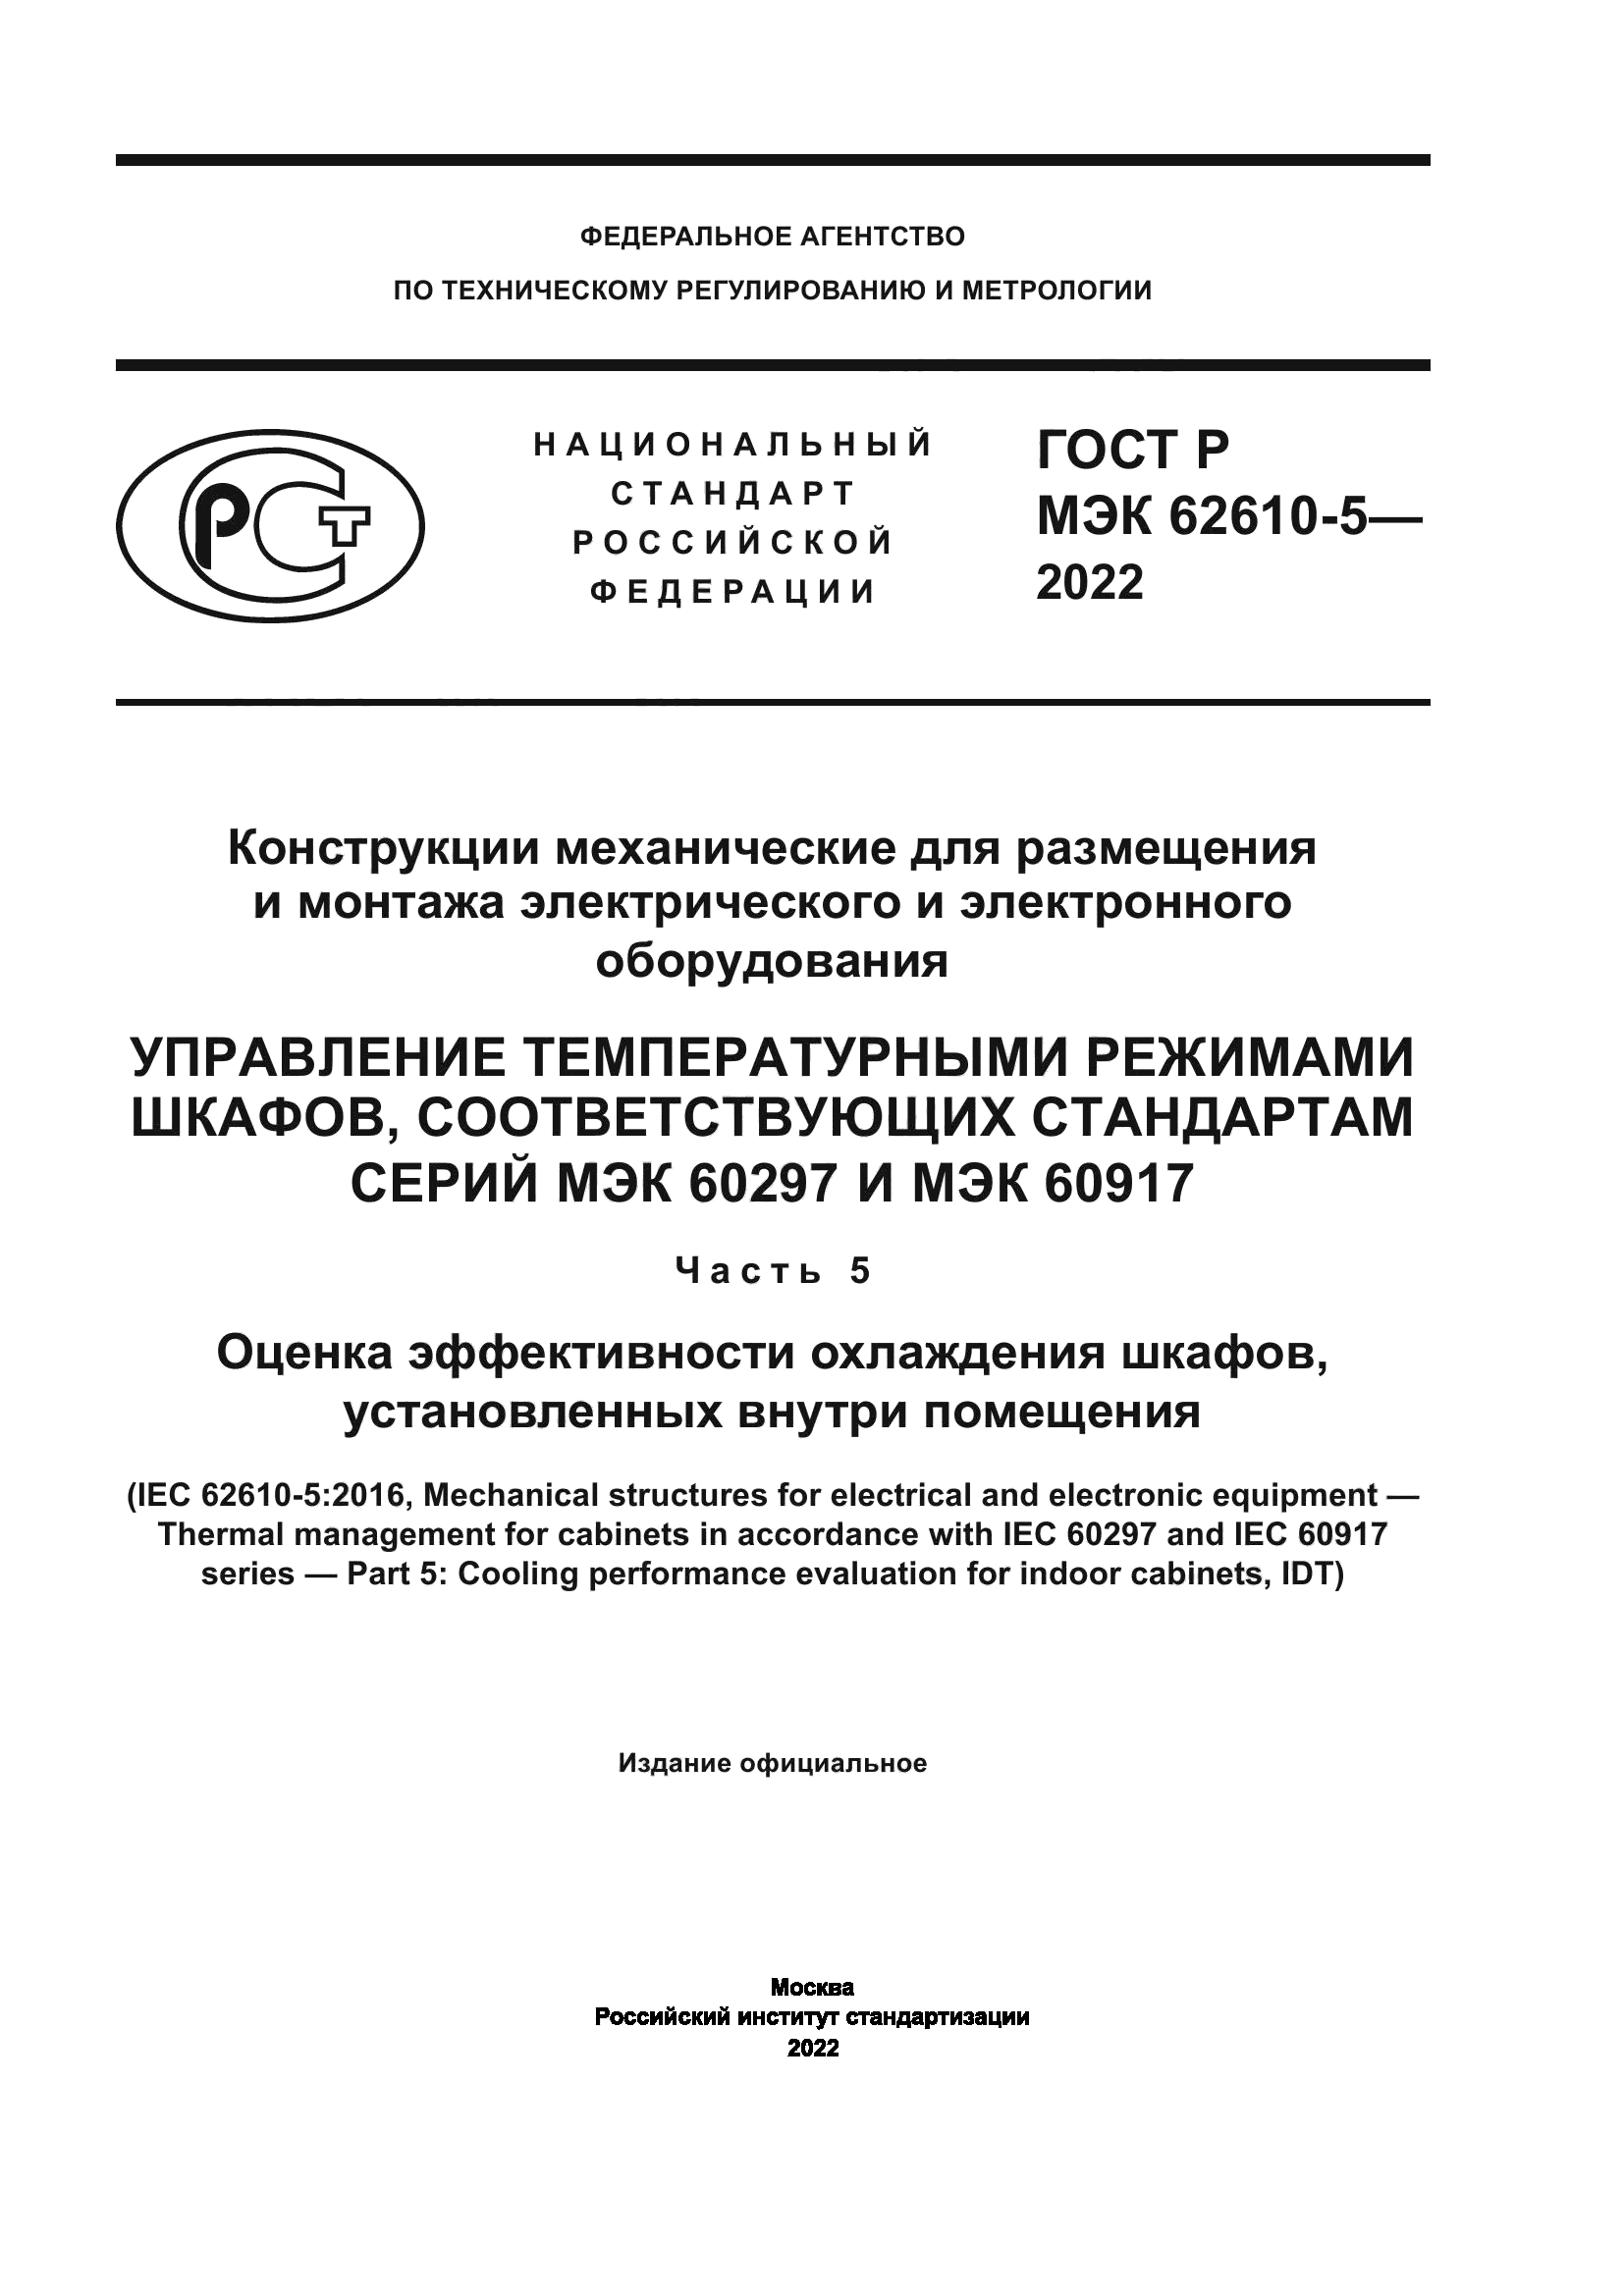 ГОСТ Р МЭК 62610-5-2022